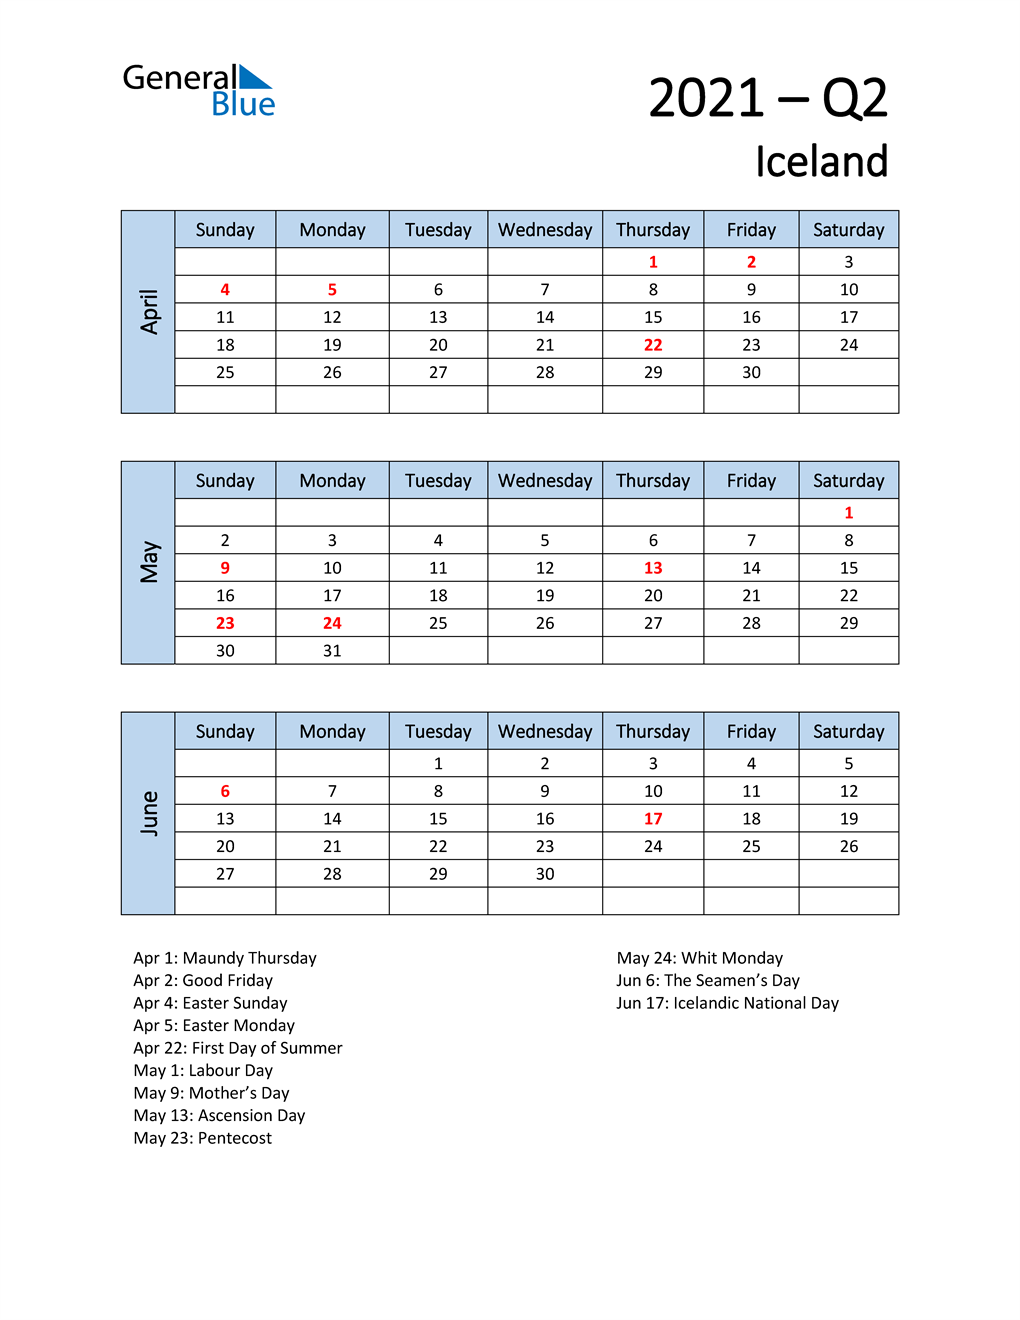  Free Q2 2021 Calendar for Iceland